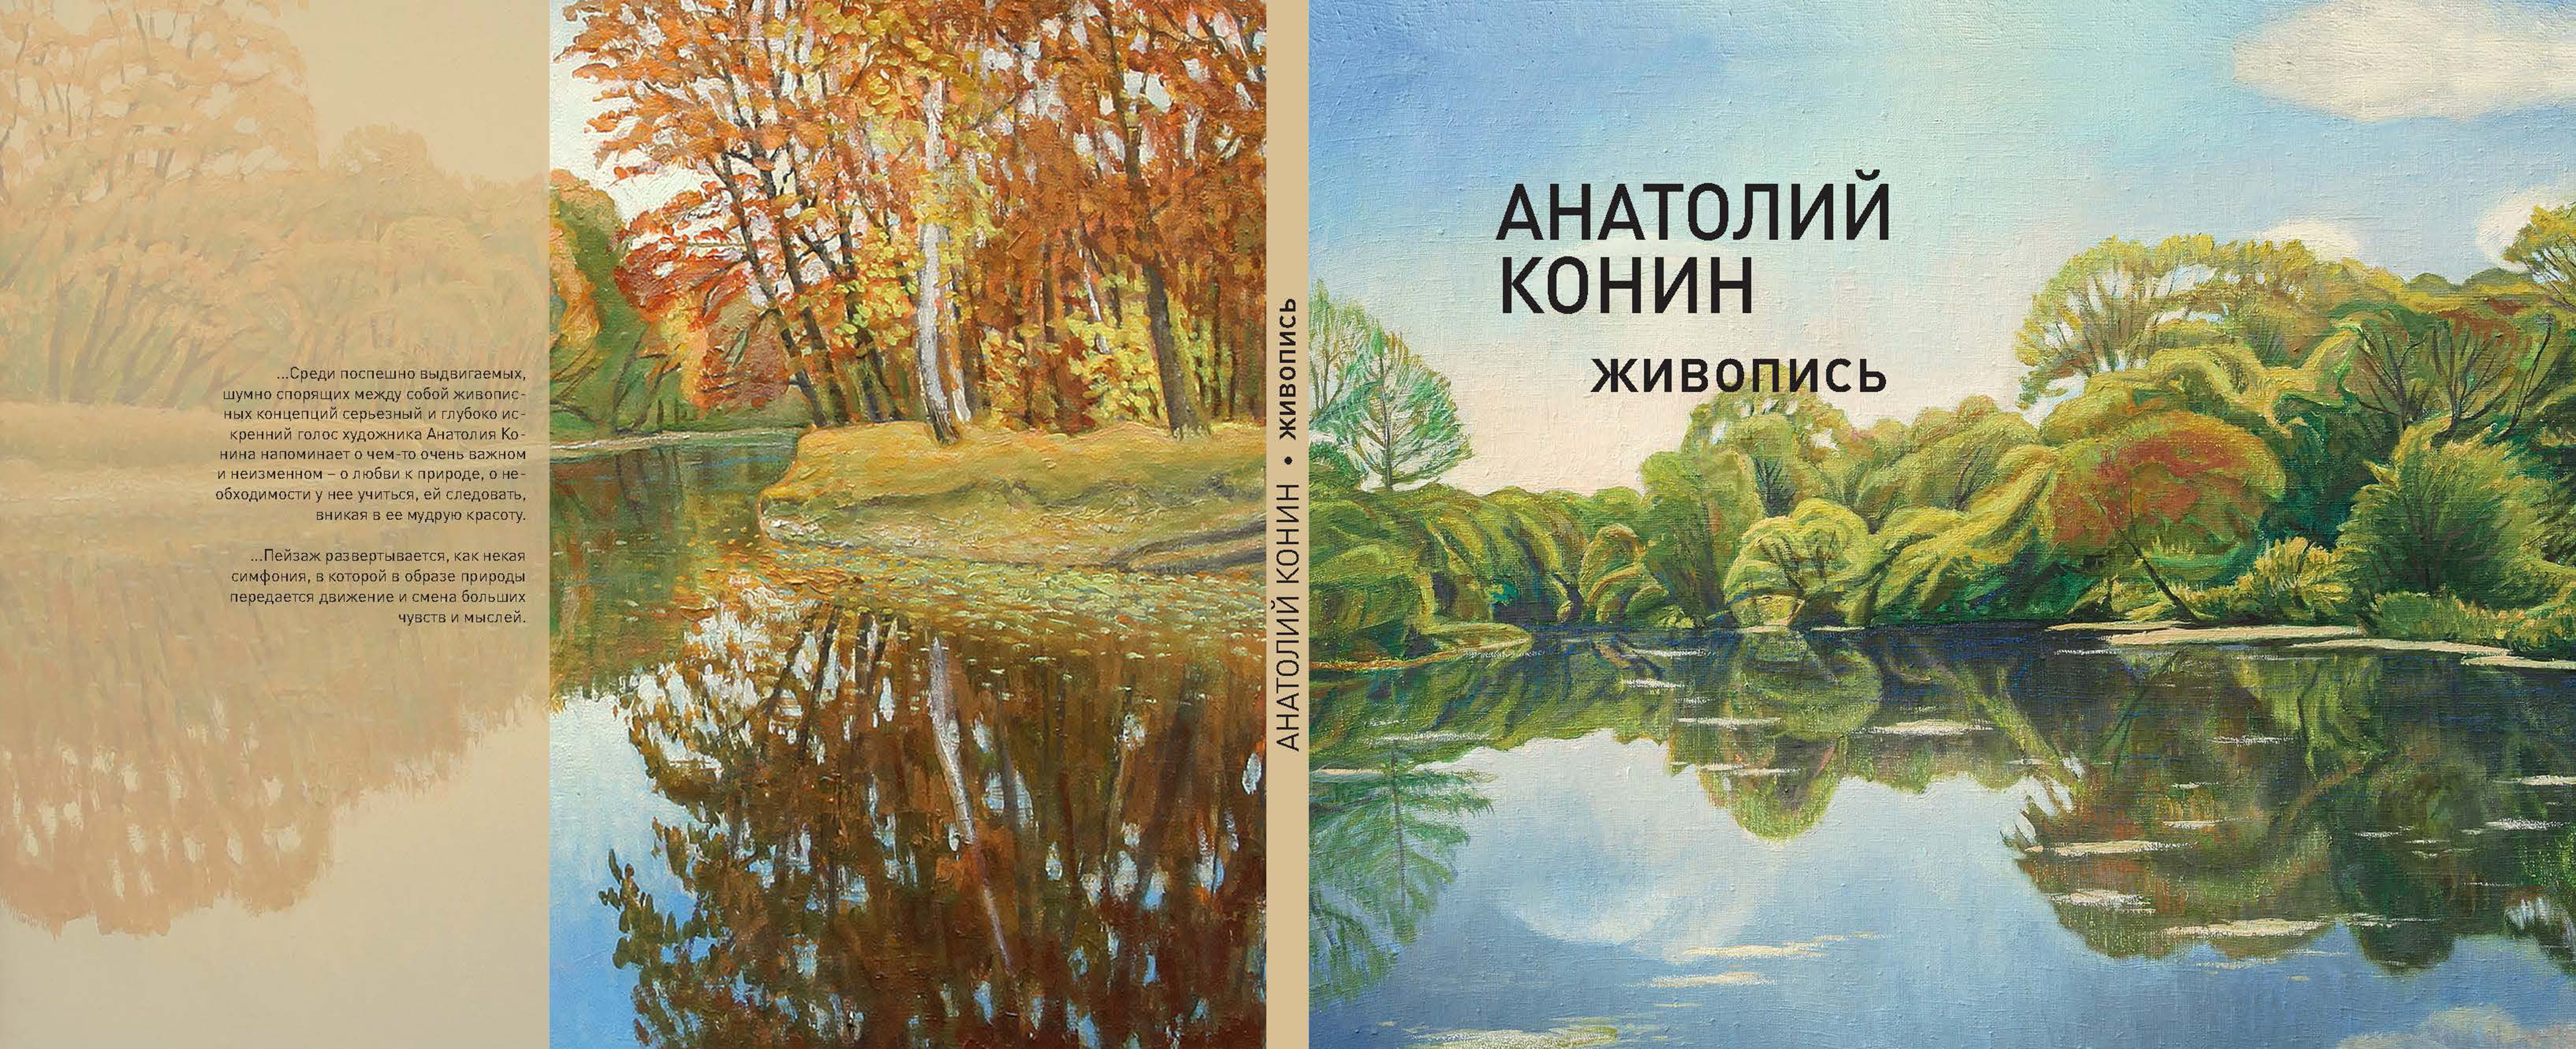 Анатолий Конин: с любовью к природе